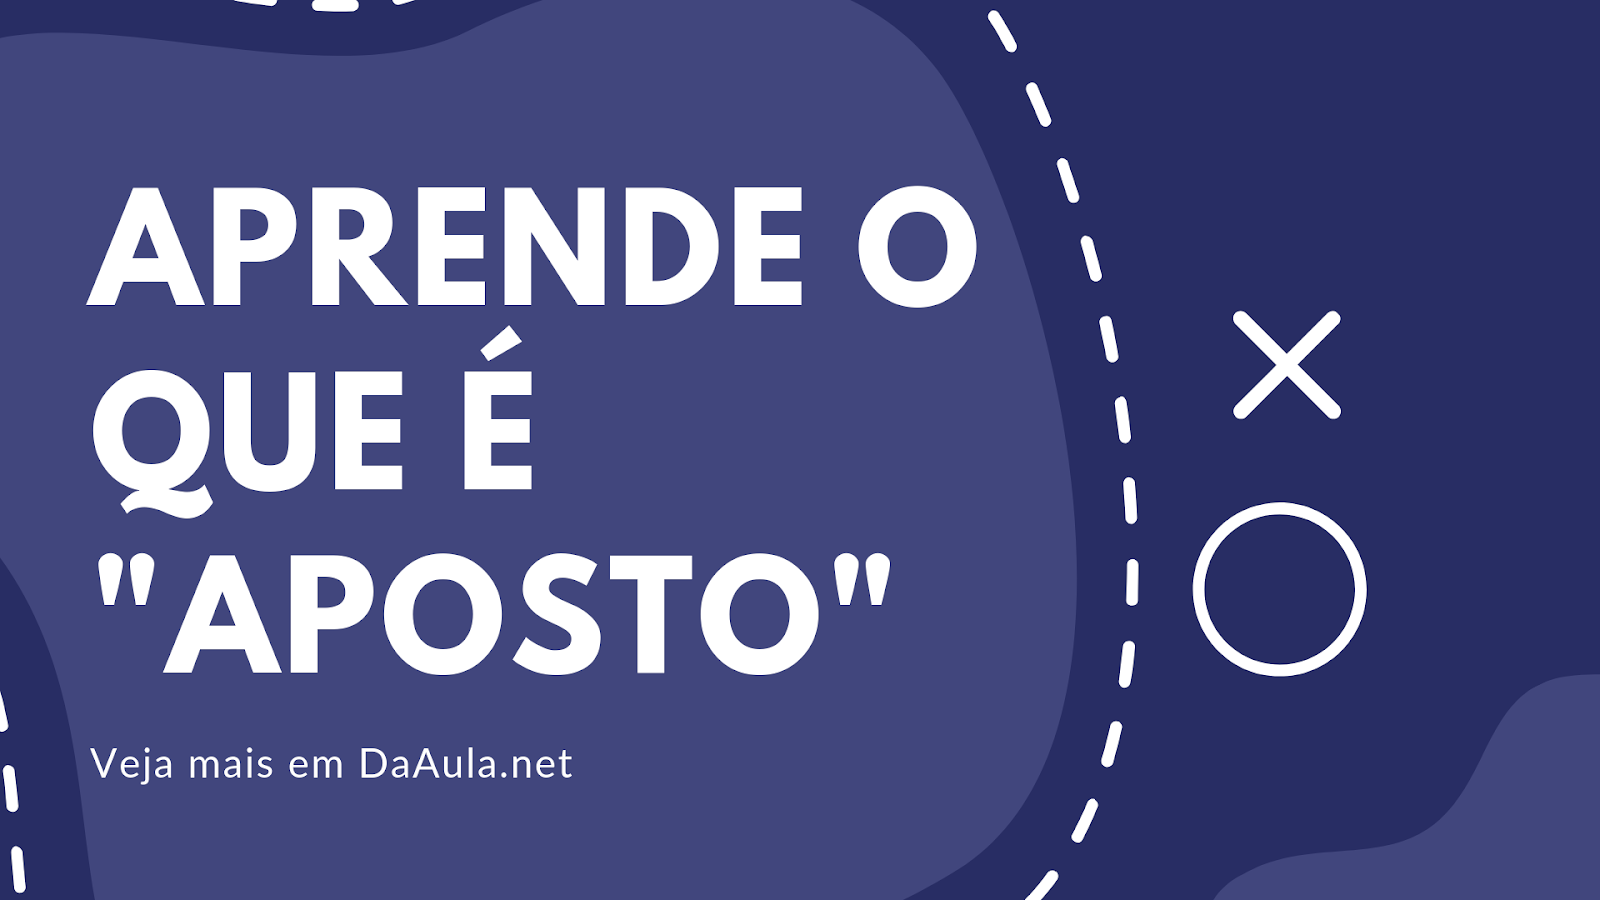 Aprenda O que é Aposto na Língua Portuguesa